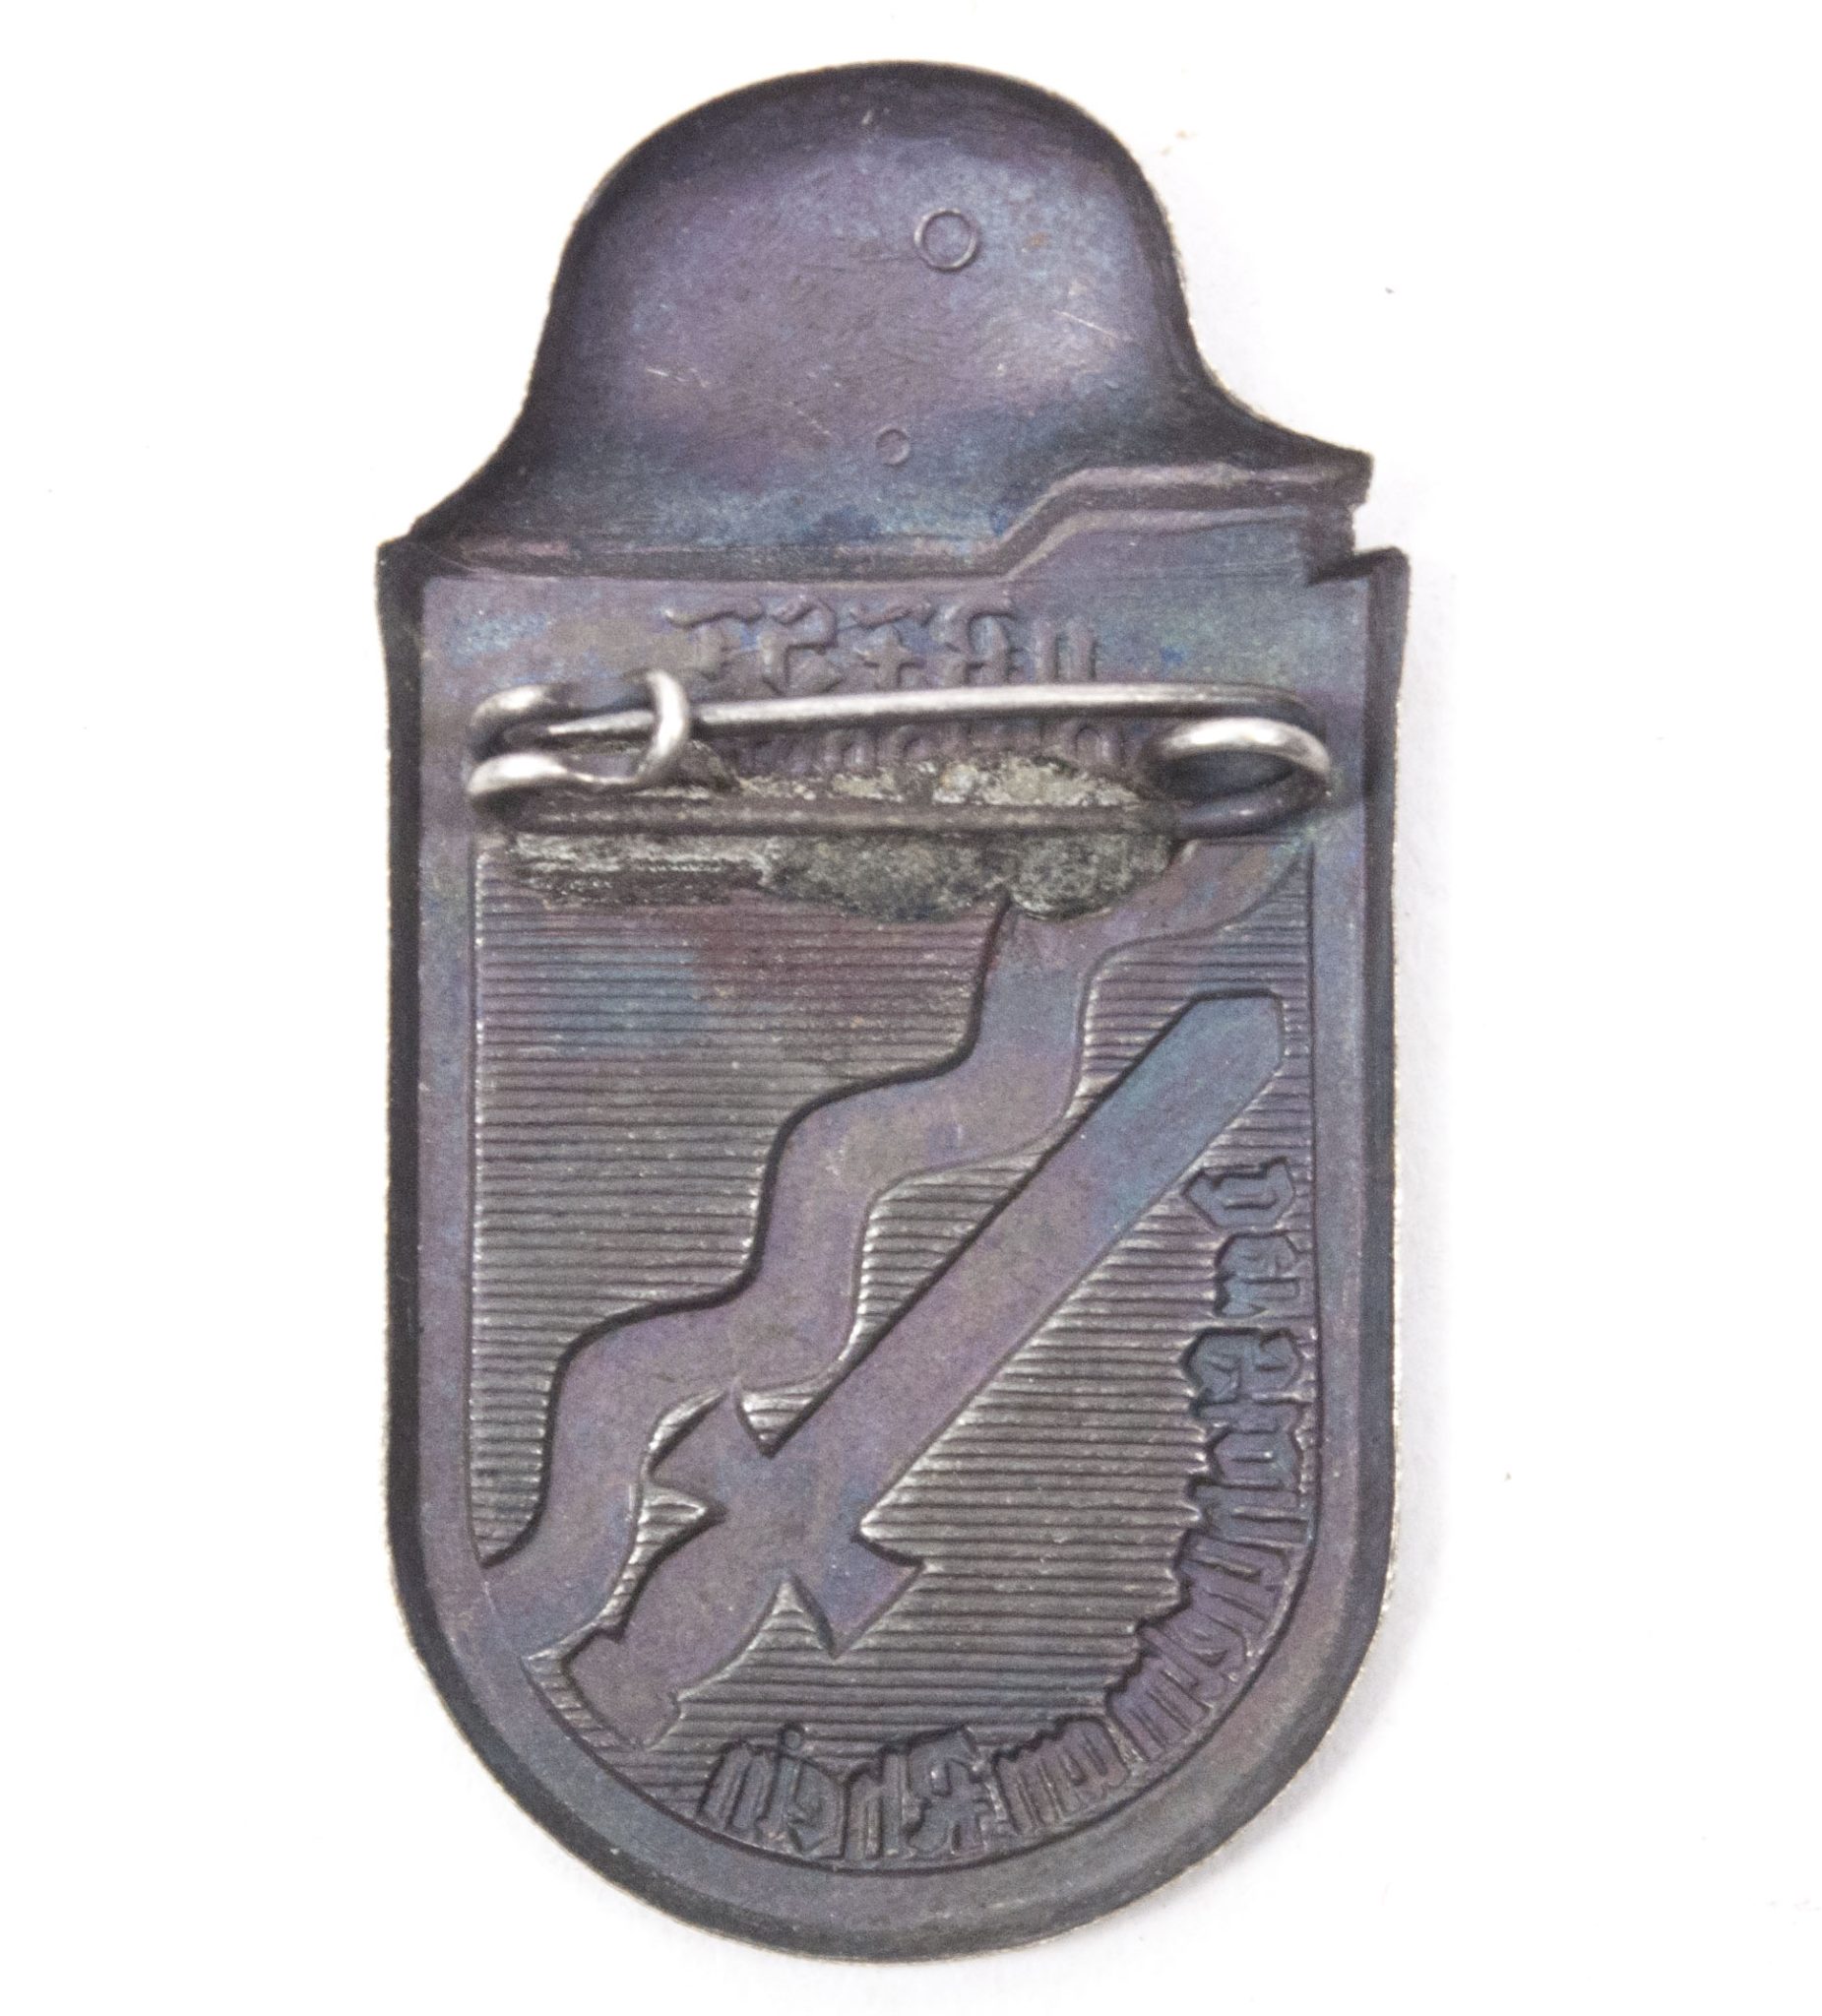 11. R.F.S.T. Reichsfrontsoldatentag Stahlhelm Der Stahlhelm am Rhein 1930 abzeichen